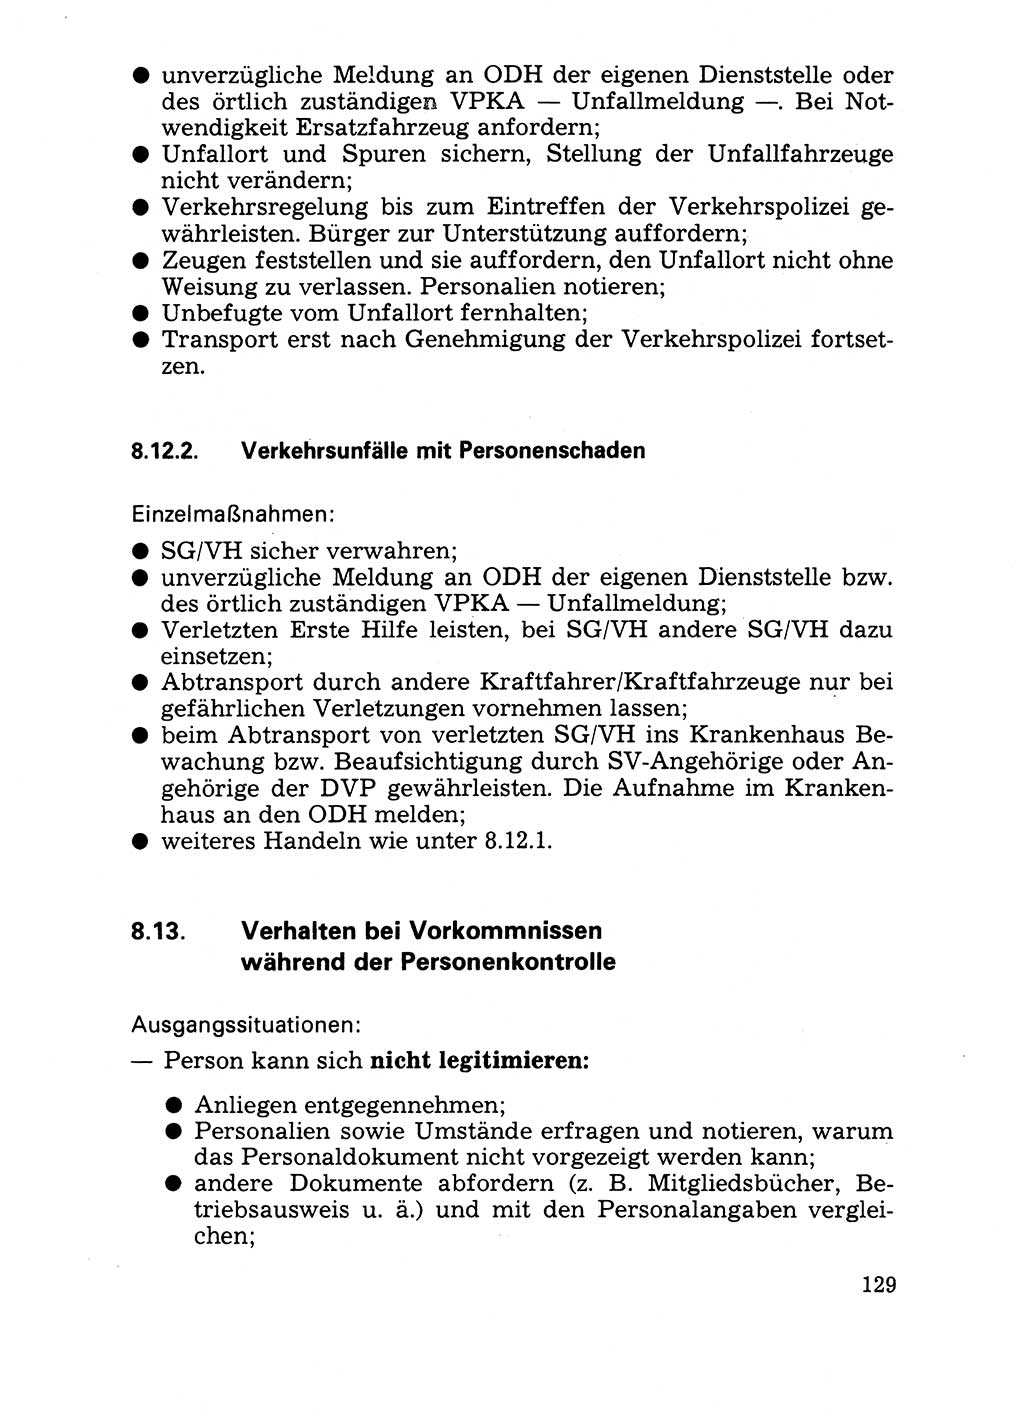 Handbuch für operative Dienste, Abteilung Strafvollzug (SV) [Ministerium des Innern (MdI) Deutsche Demokratische Republik (DDR)] 1981, Seite 129 (Hb. op. D. Abt. SV MdI DDR 1981, S. 129)